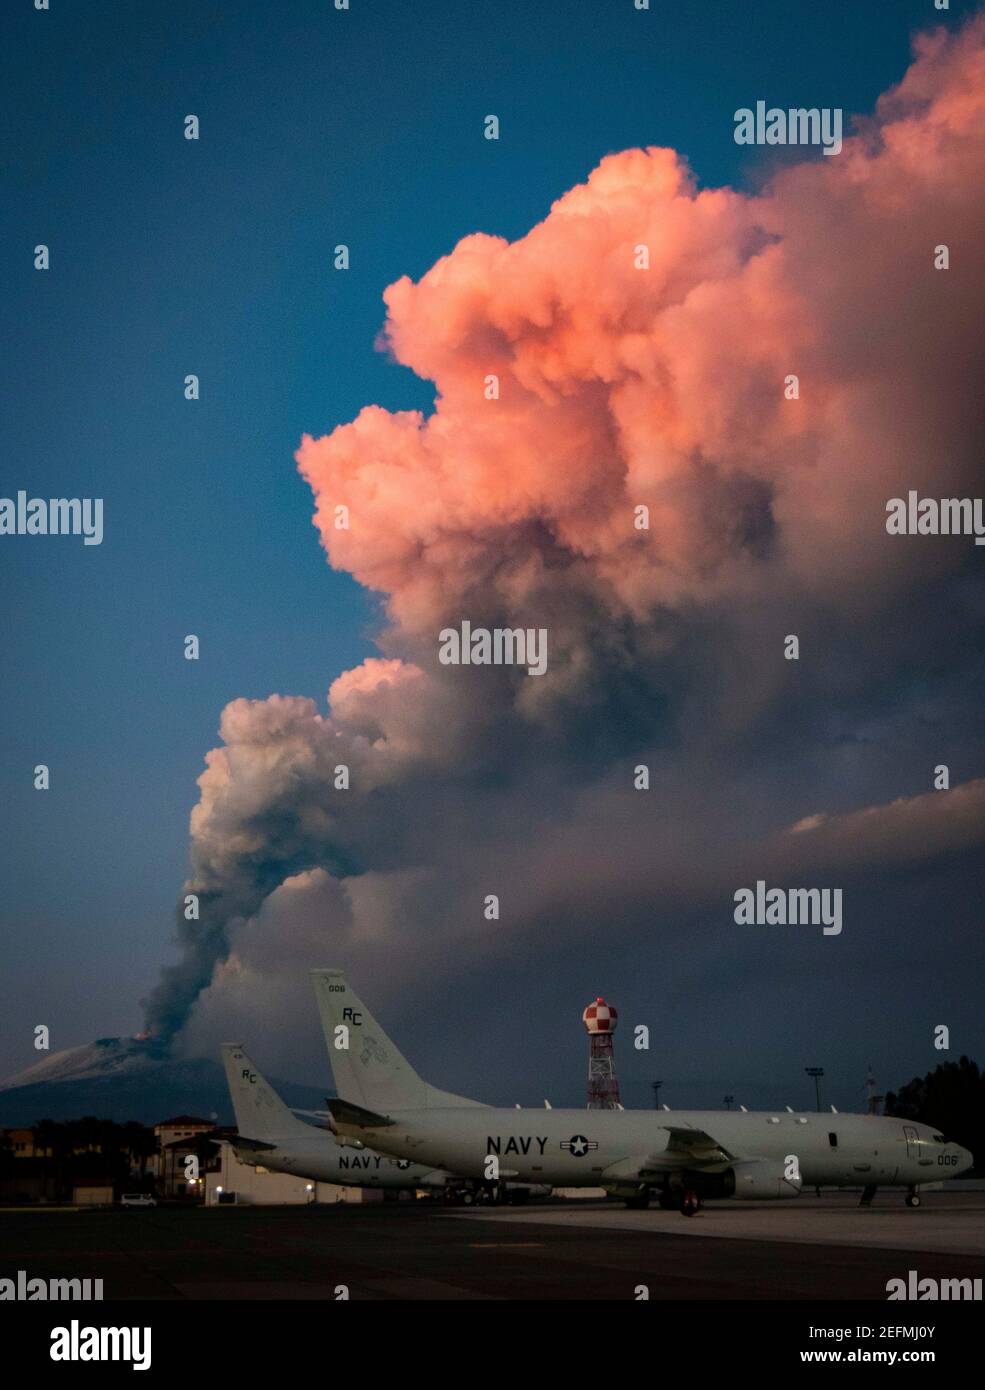 Sigonella, Italia. 16 de febrero de 2021. Europas volcán más activo Mt. Etna, lanza una nube de ceniza desde la línea de vuelo en la base Naval de EE.UU. Sigonella 16 de febrero de 2021 en Sigonella, Sicilia, Italia. El Etna es el volcán más alto y activo de Europa. Crédito: Planetpix/Alamy Live News Foto de stock